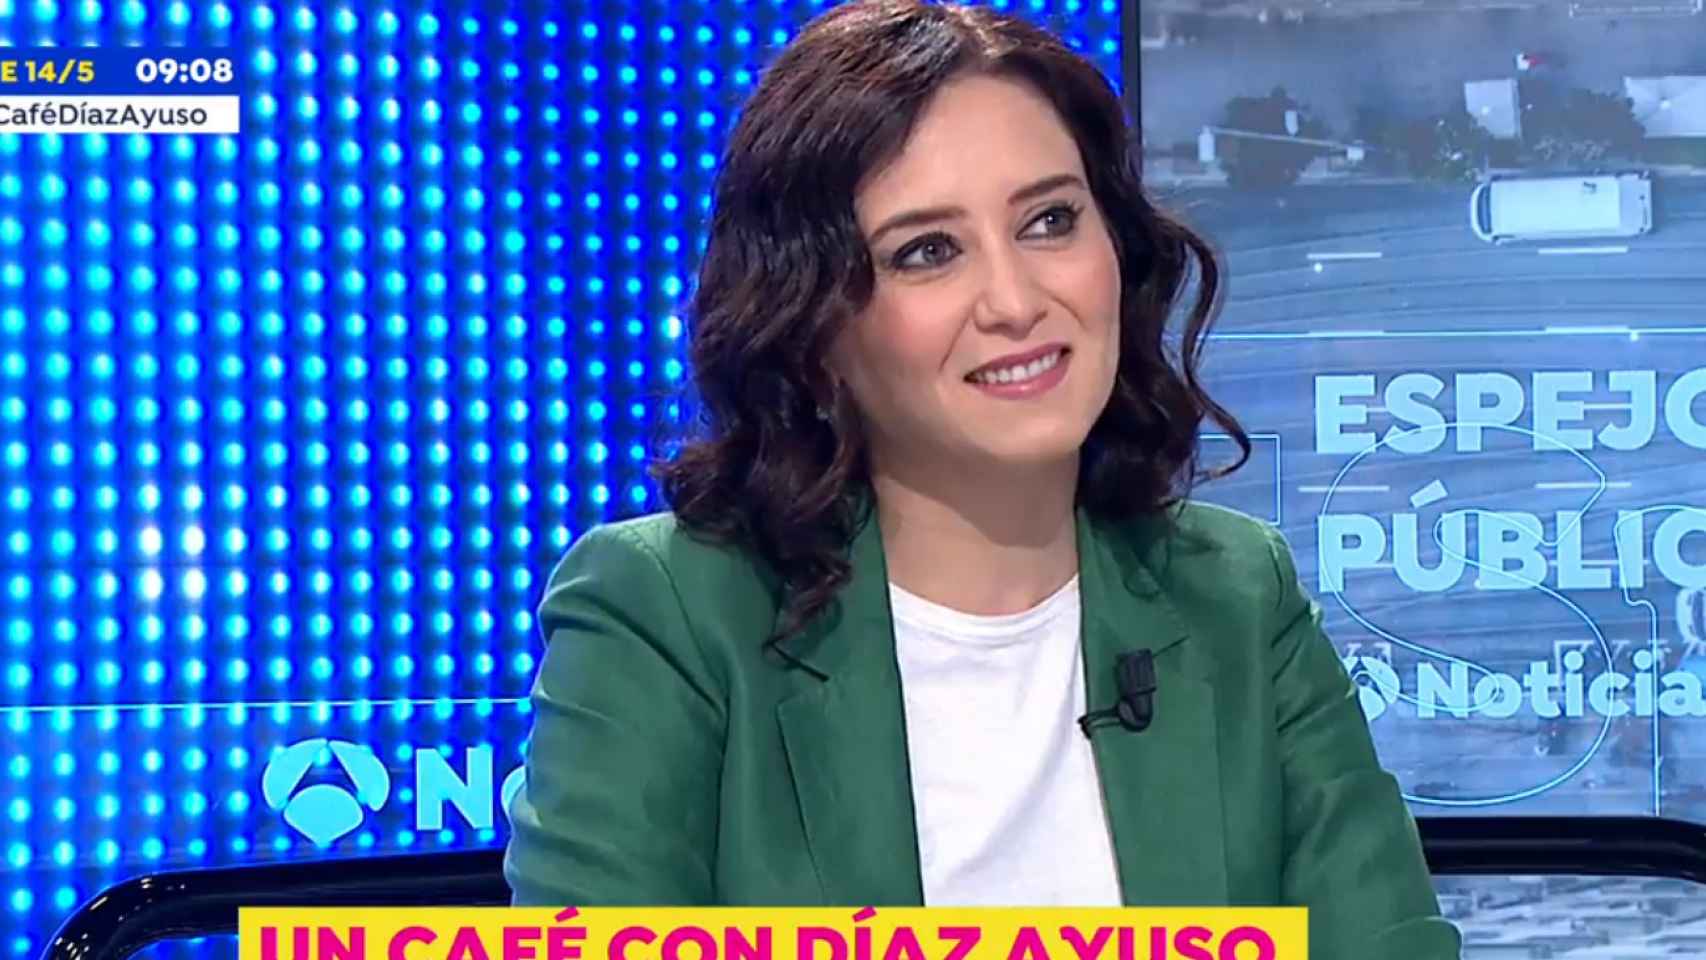 Isabel Díaz Ayuso, presidenta de la Comunidad de Madrid, en Antena 3.